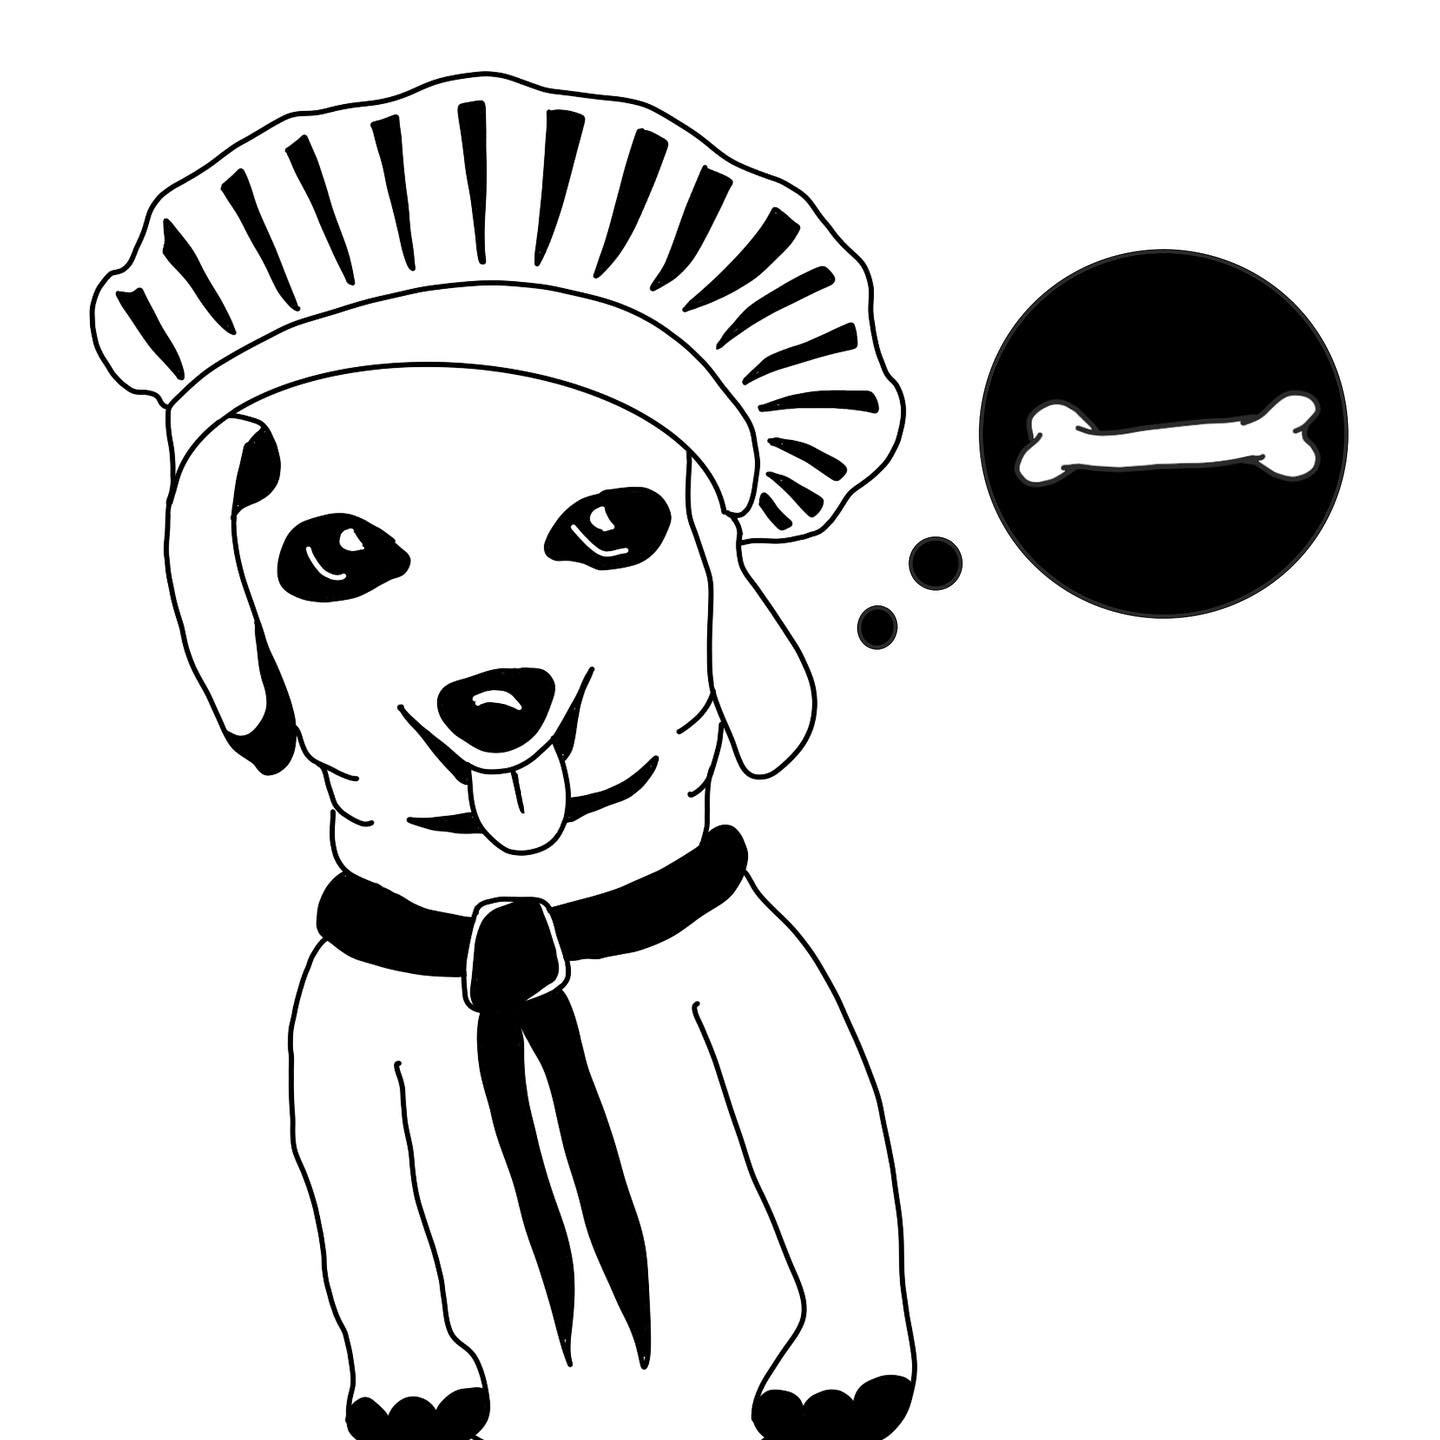 Derp-dog Illustration